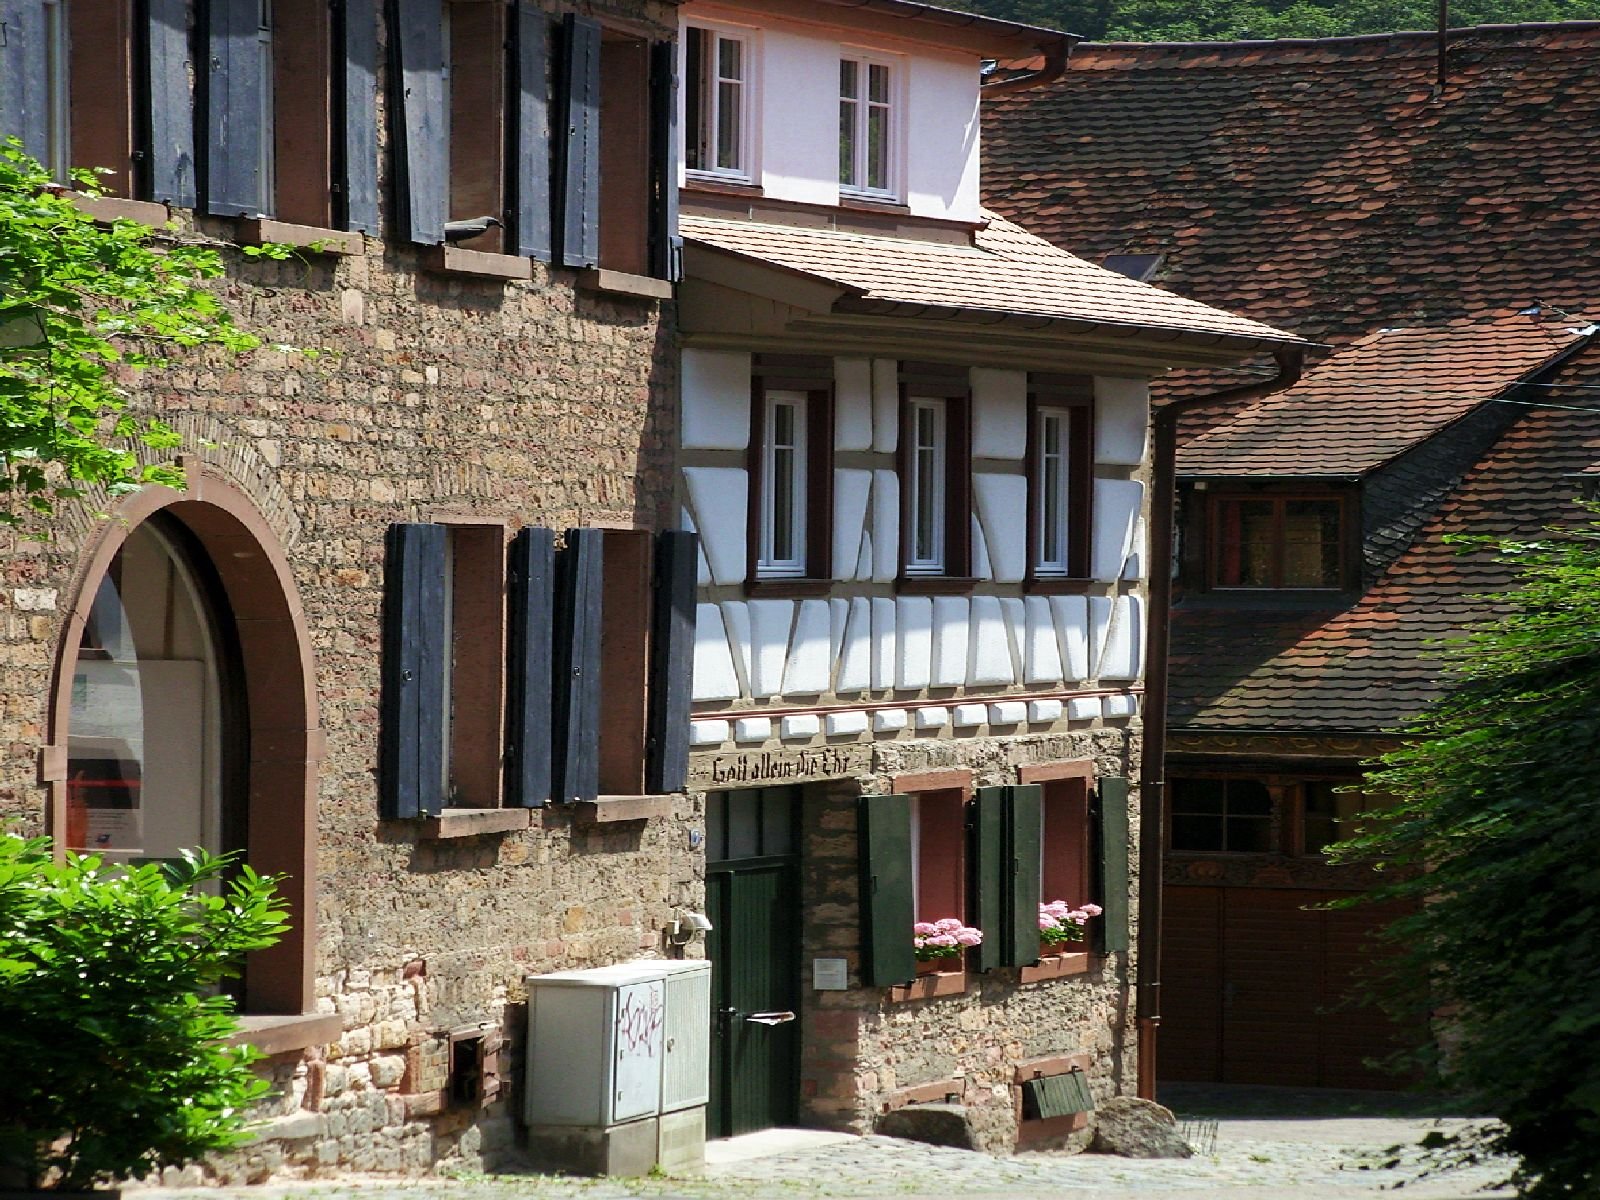 Fachwerkhäuser und alte Steinhäuser in einer Straße